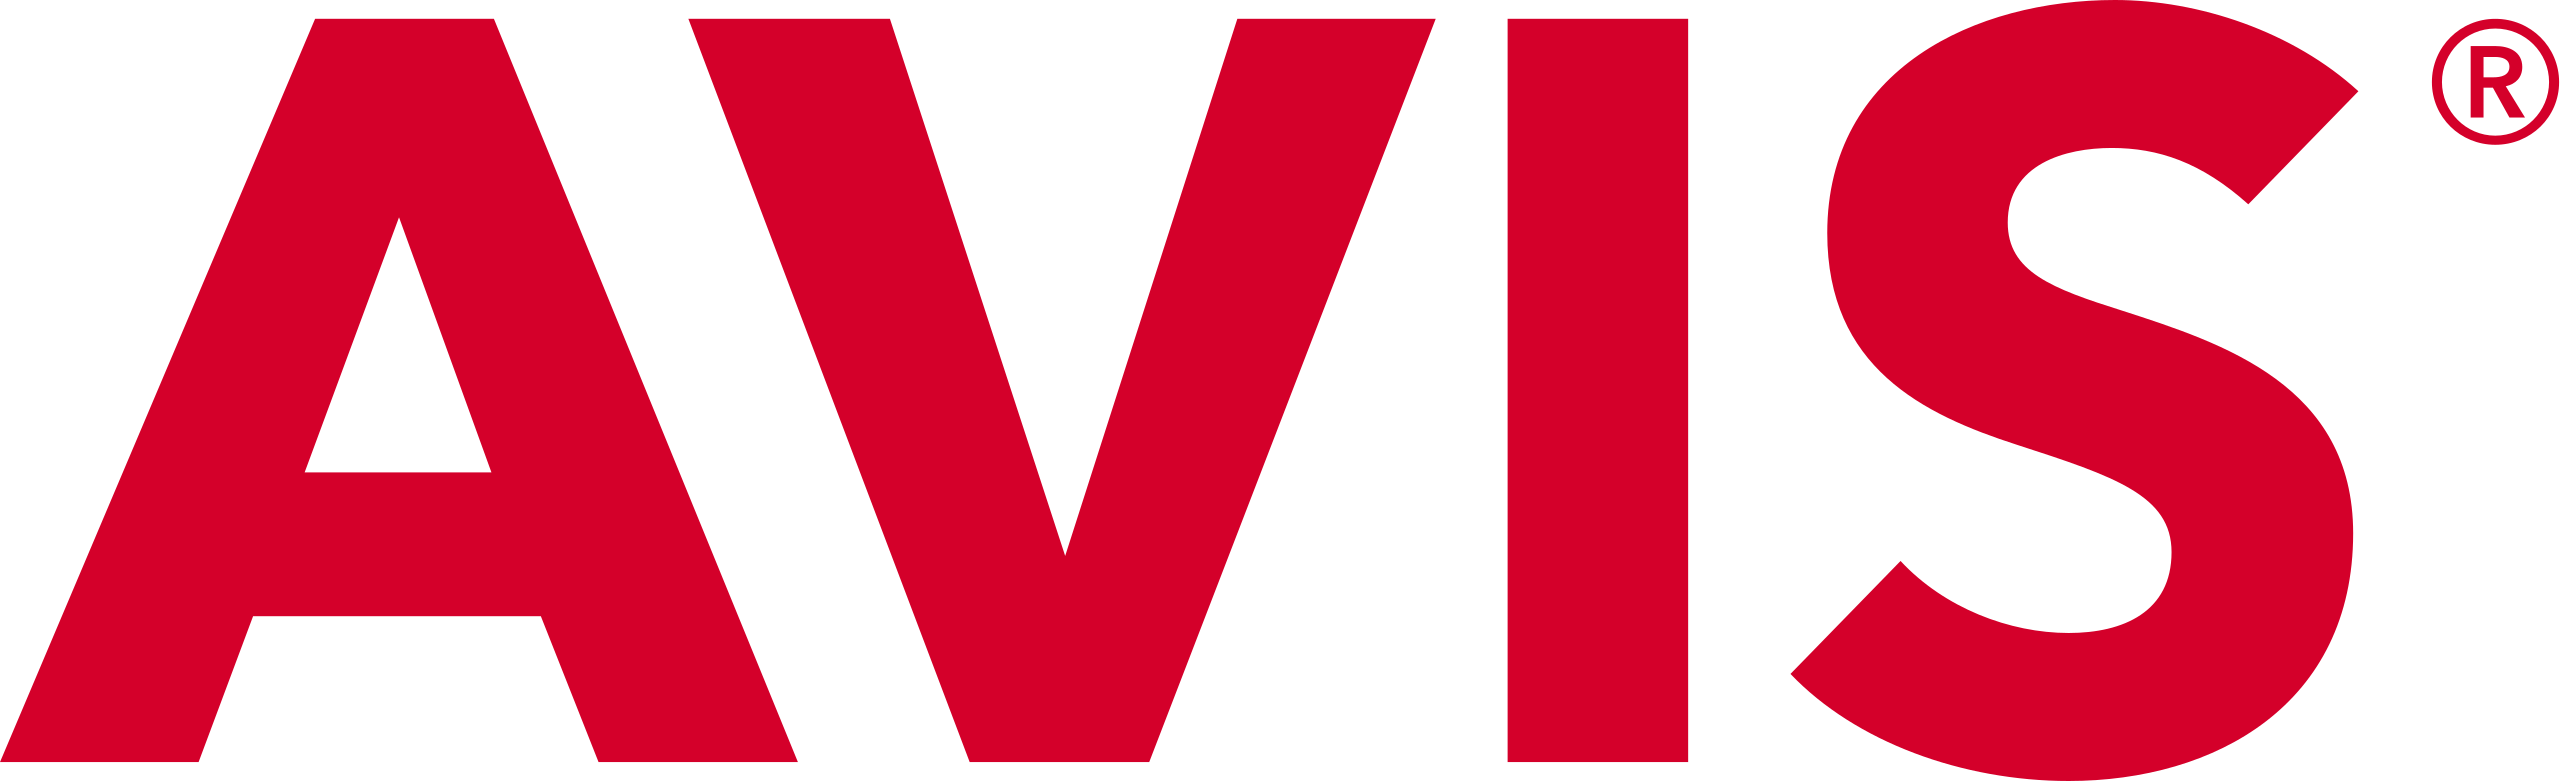 Logo of our partner Avis